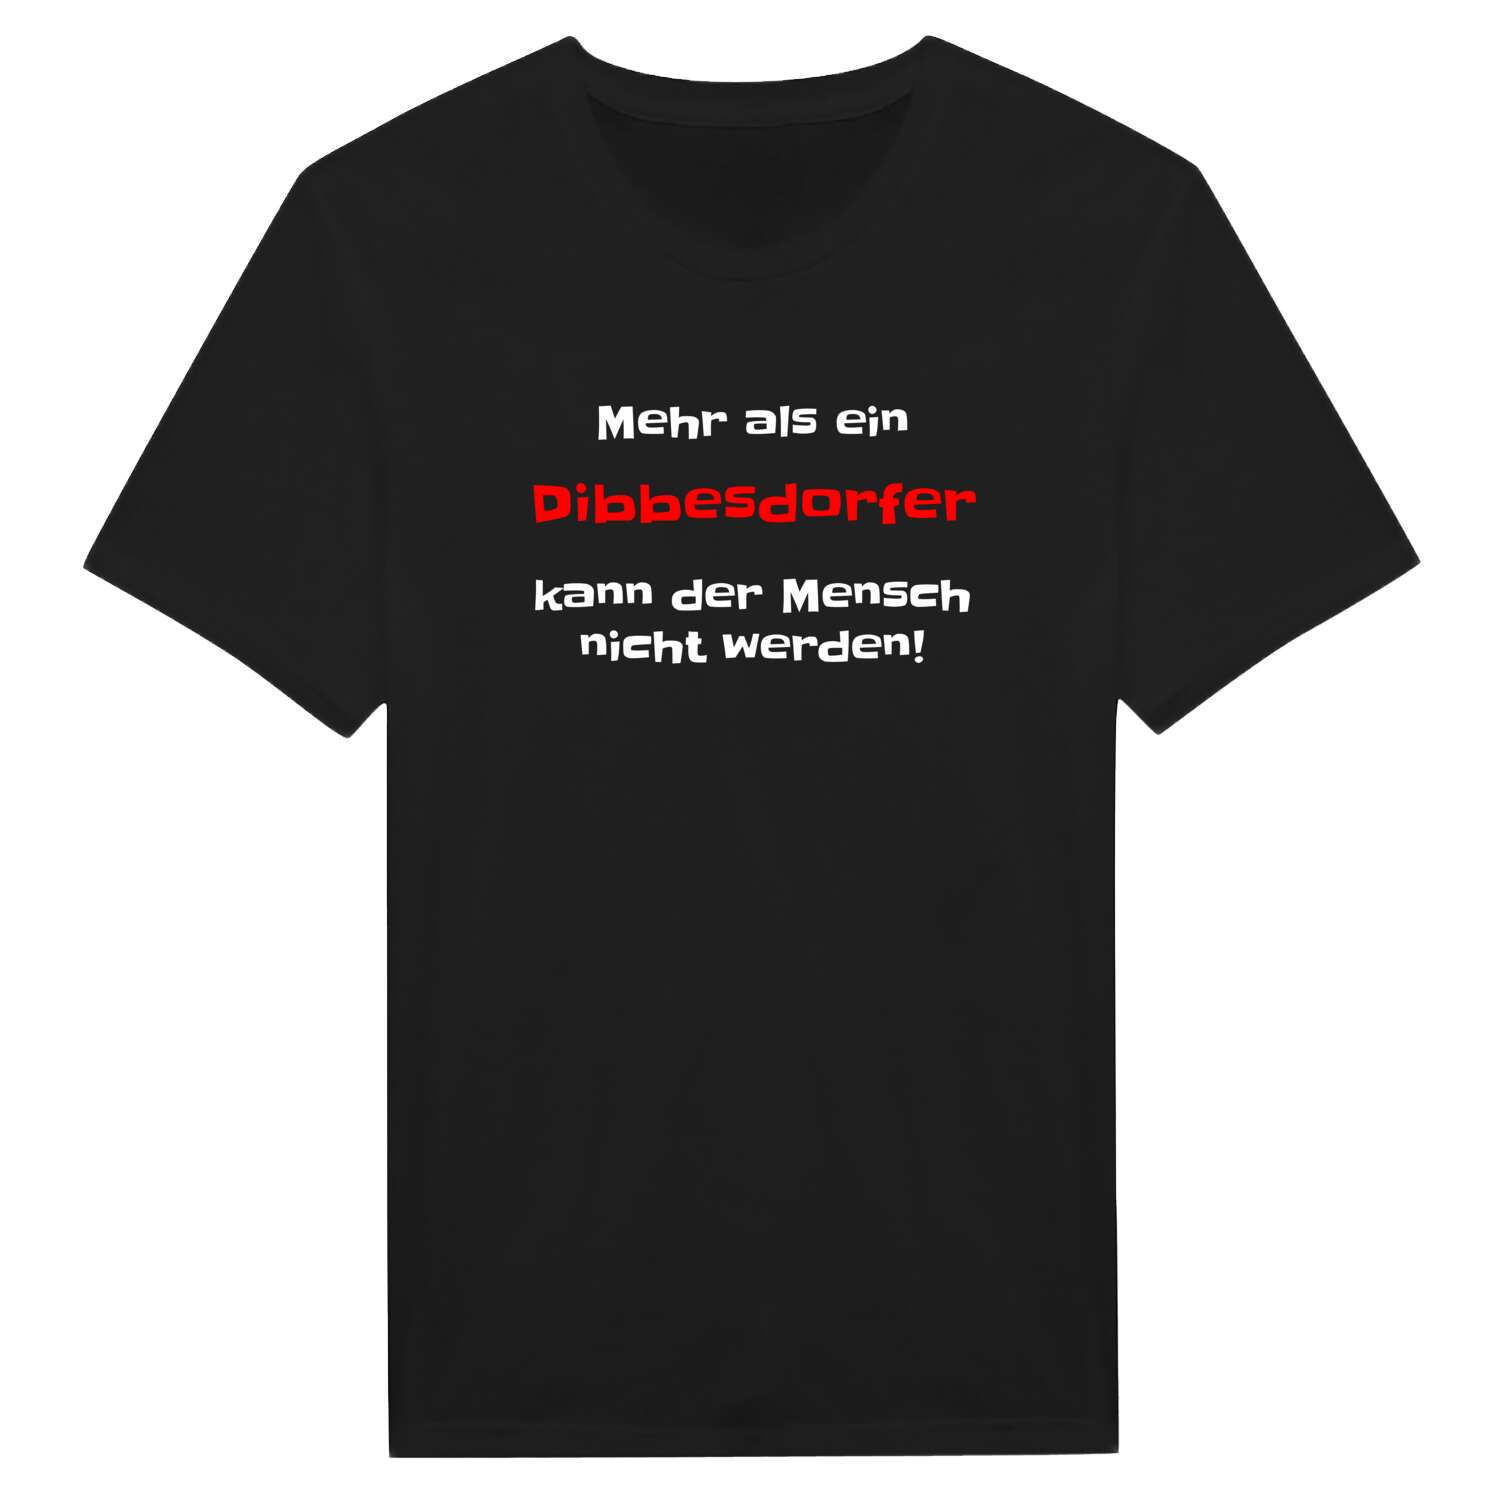 Dibbesdorf T-Shirt »Mehr als ein«